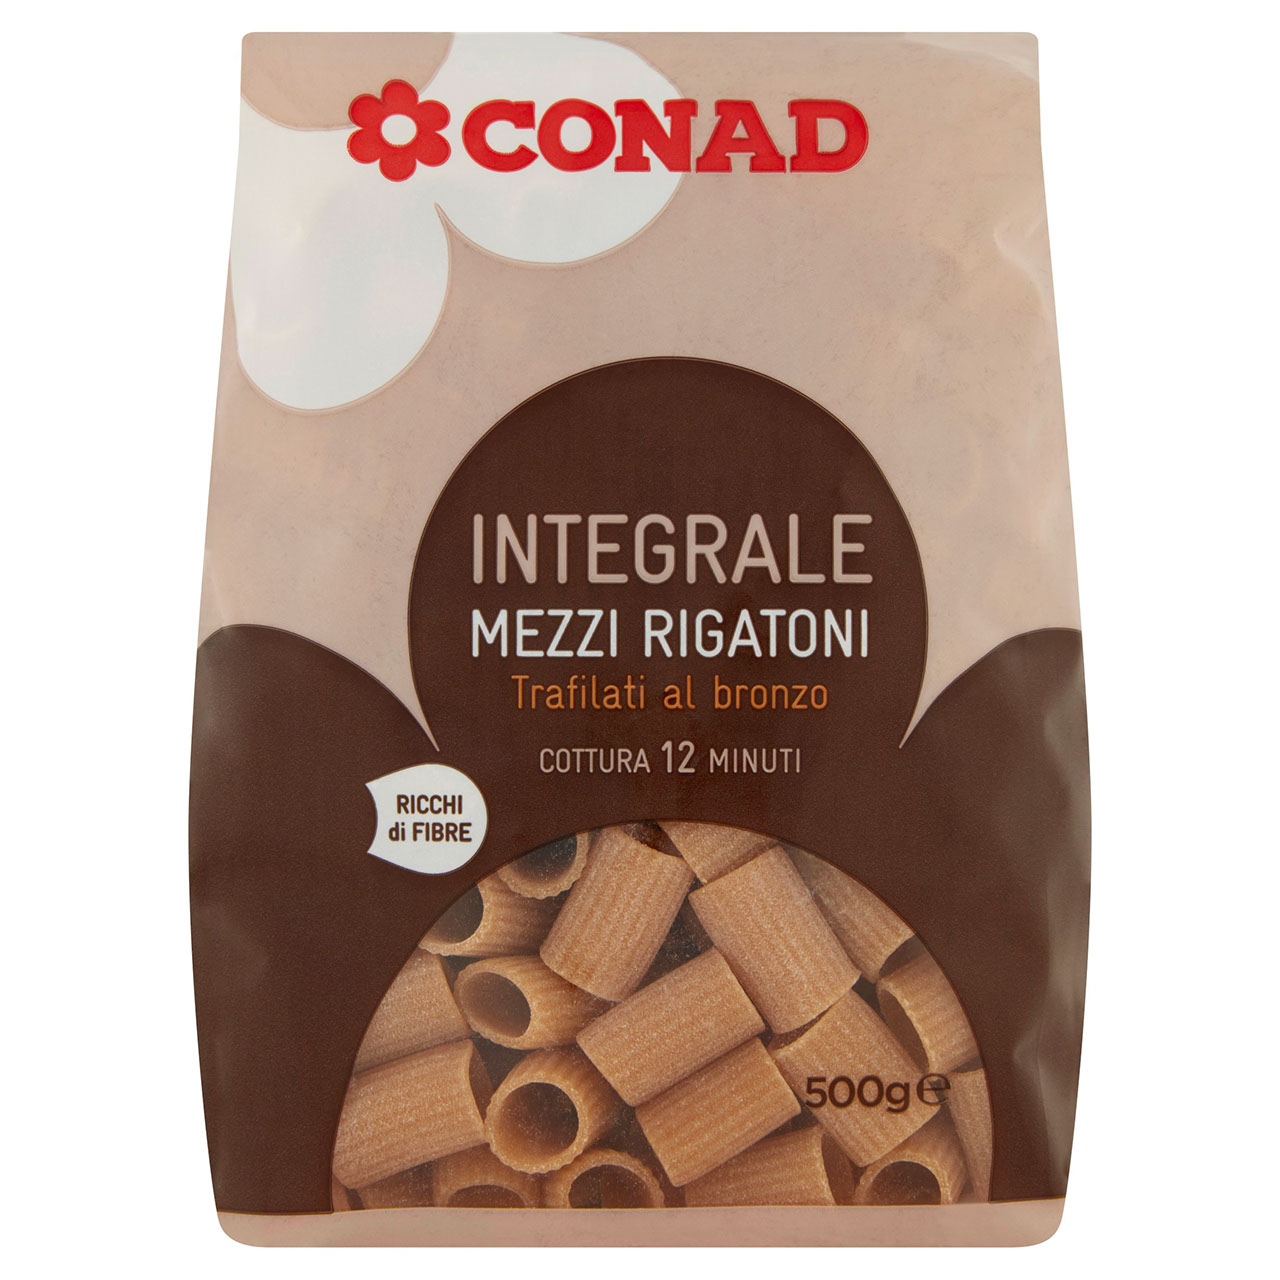 Mezzi Rigatoni Integrale 500g Conad online